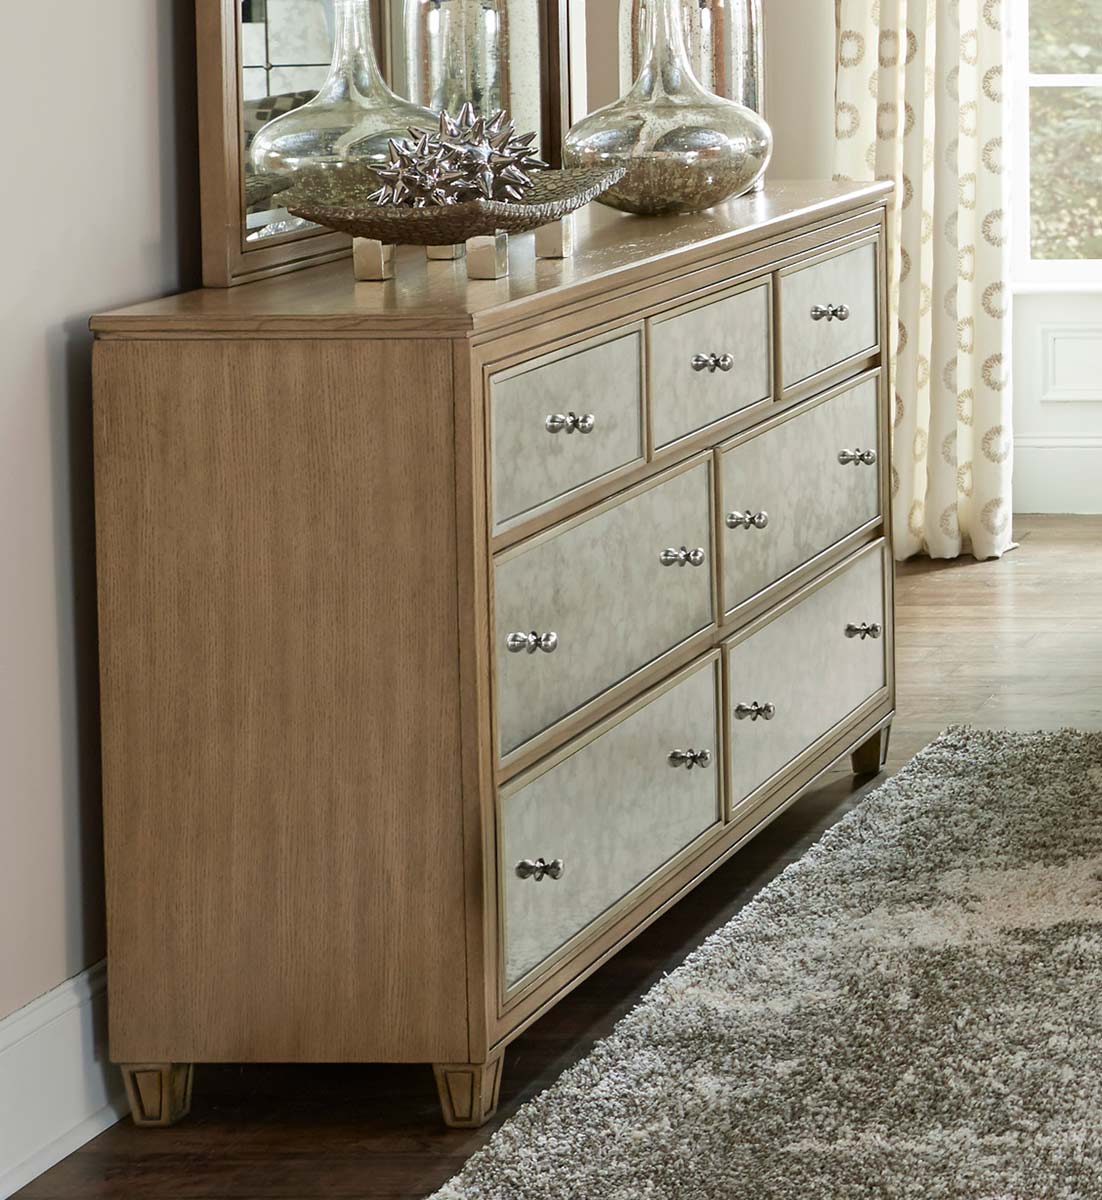 Homelegance Kalette Dresser - Light Oak - Antiqued mirrored